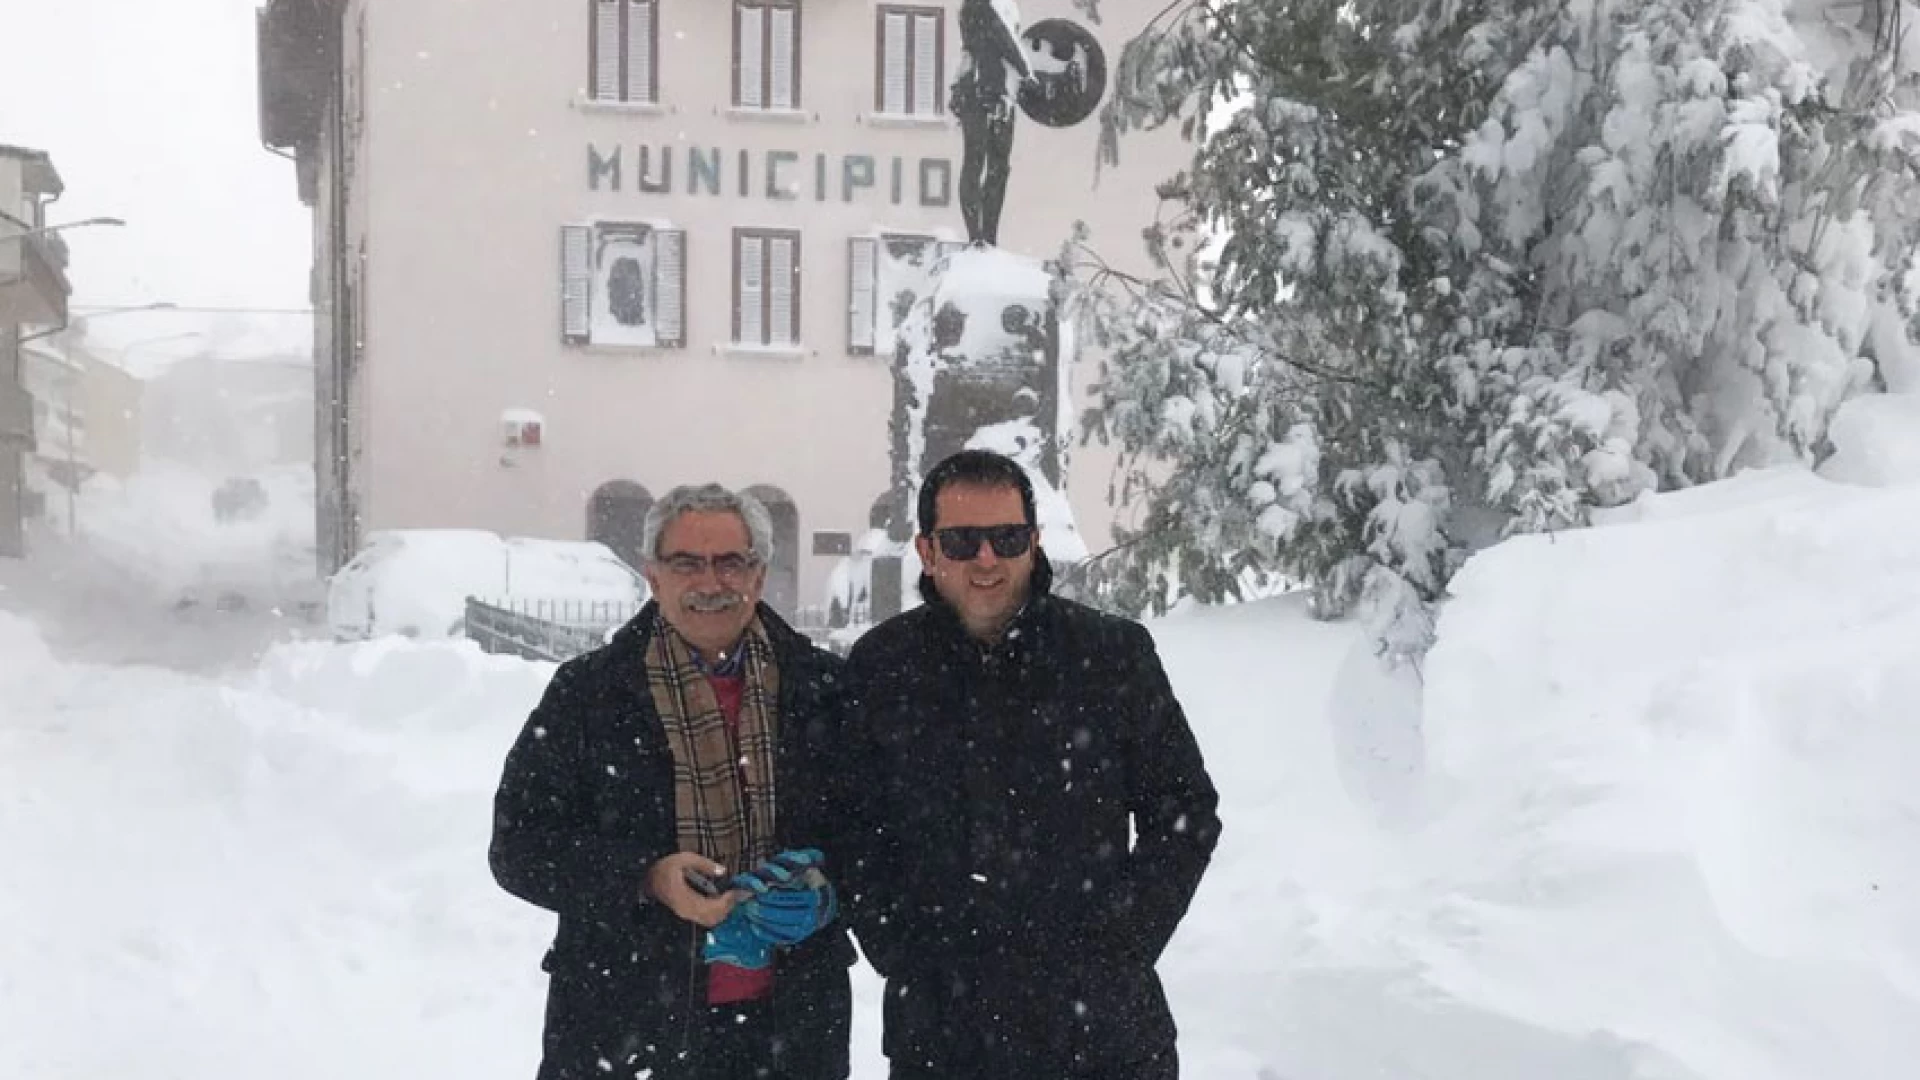 Emergenza neve: la Provincia è stata efficientissima. Al sindaco di Pietrabbondante Tesone suggerisco di rimboccarsi le maniche invece di lasciare in abbandono il suo comune.